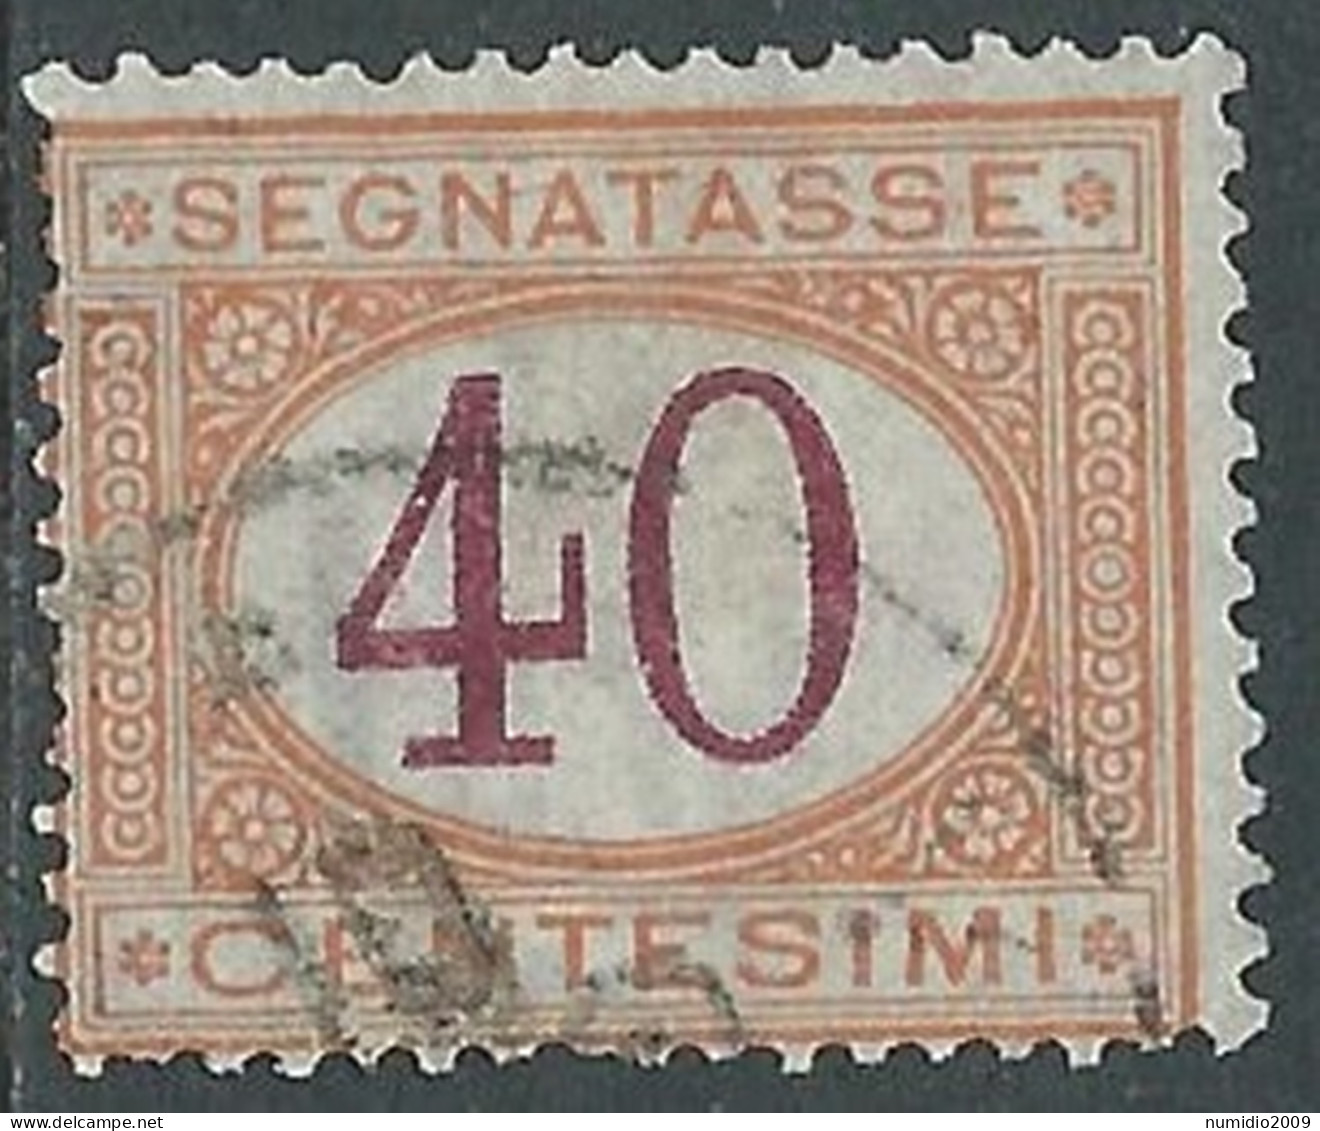 1890-94 REGNO SEGNATASSE USATO 40 CENT - P13-5 - Segnatasse